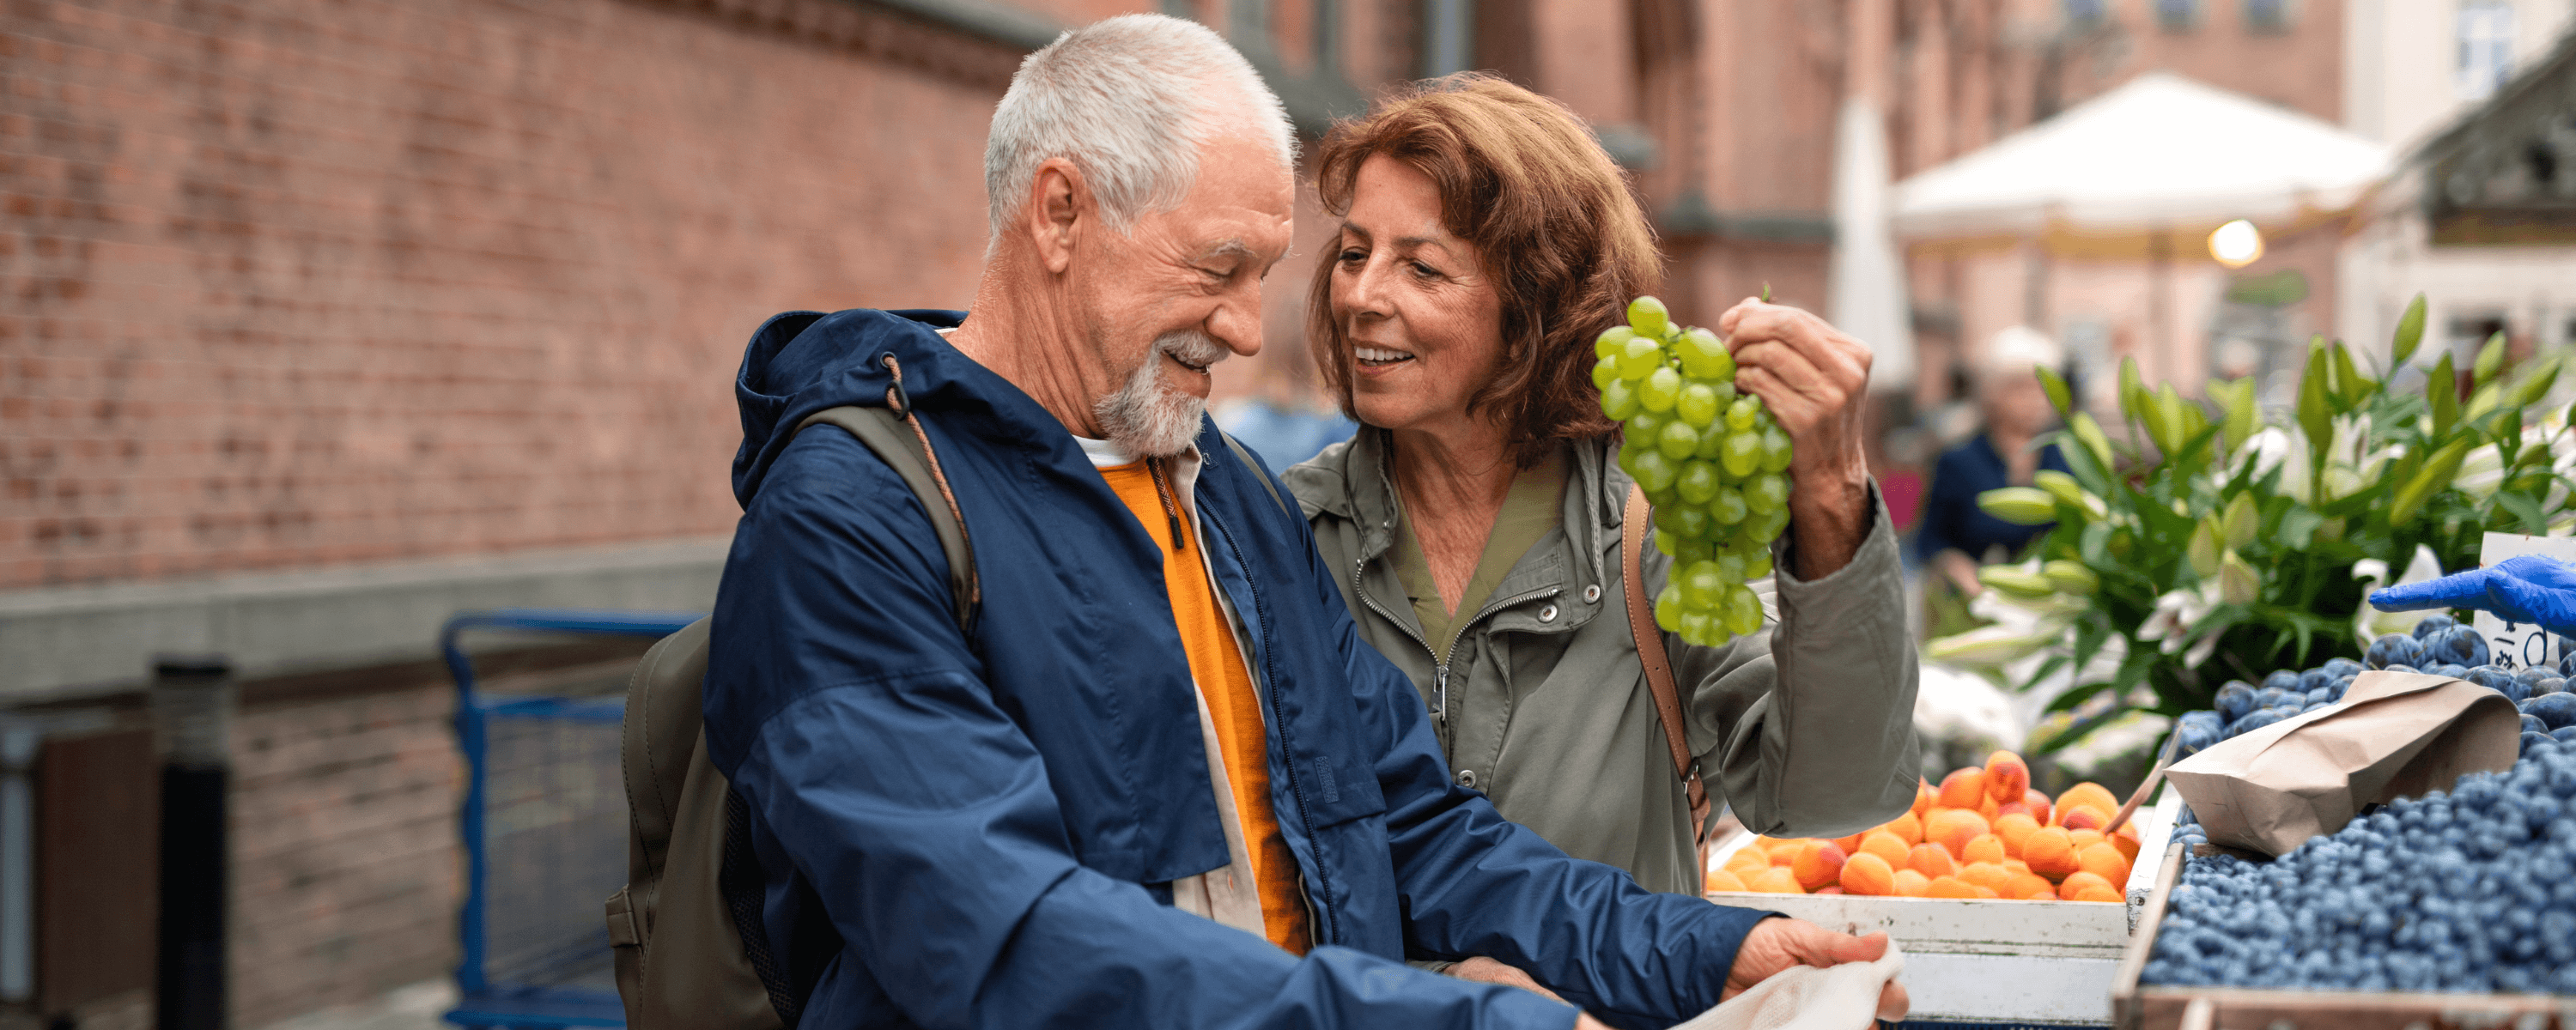 Mann und Frau kaufen Obst auf einem Markt